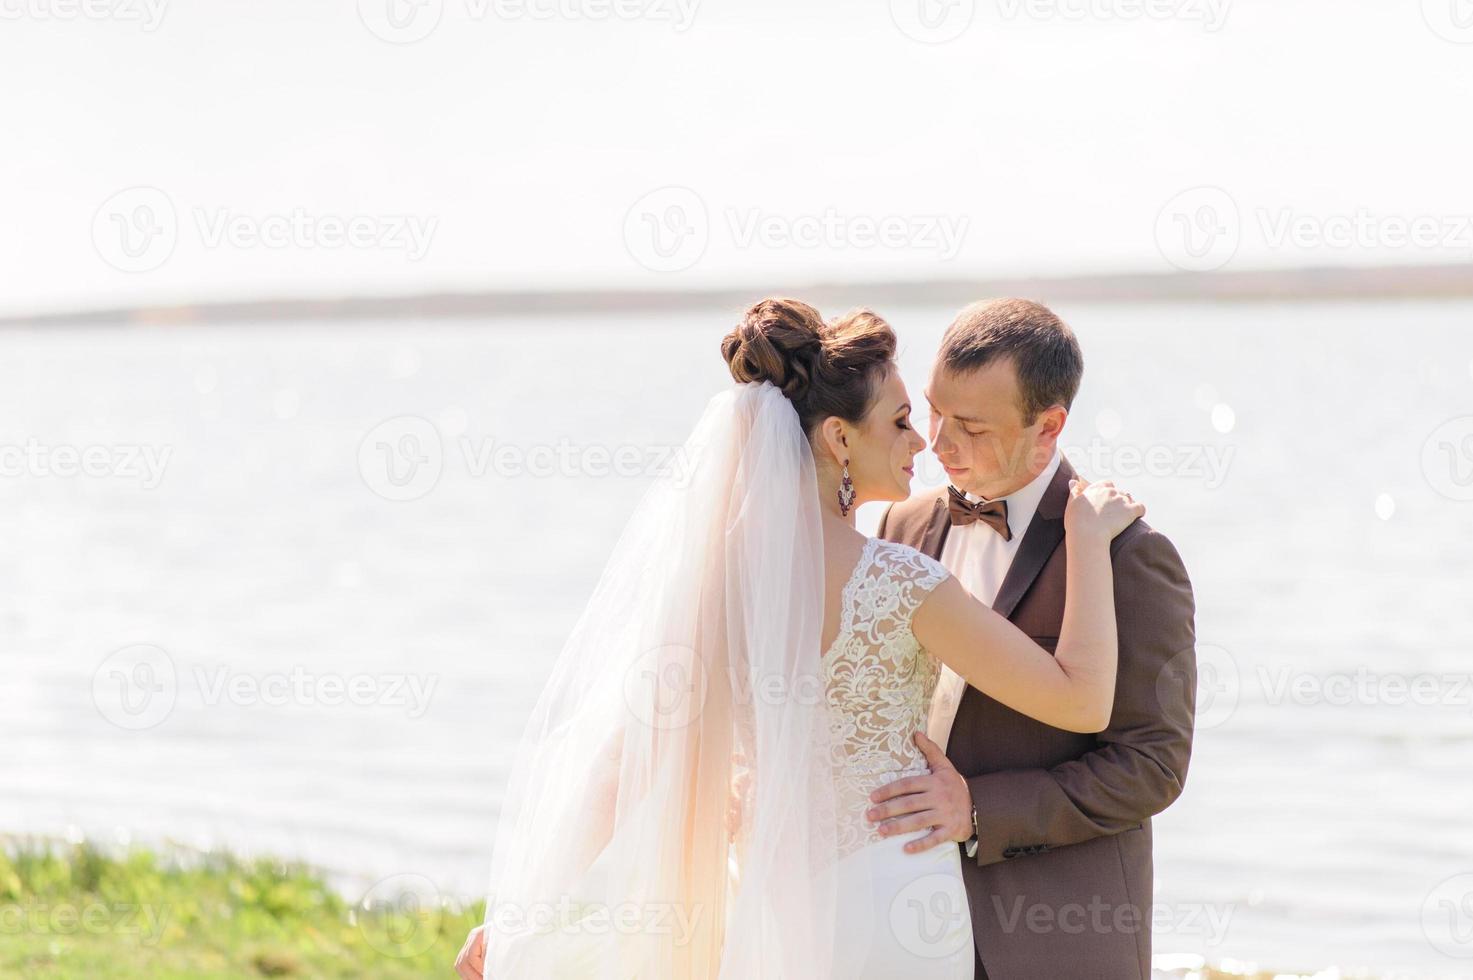 die braut und der bräutigam umarmen sich nahe dem teich in der natur. der Wind wirft einen leichten Schleier auf. foto